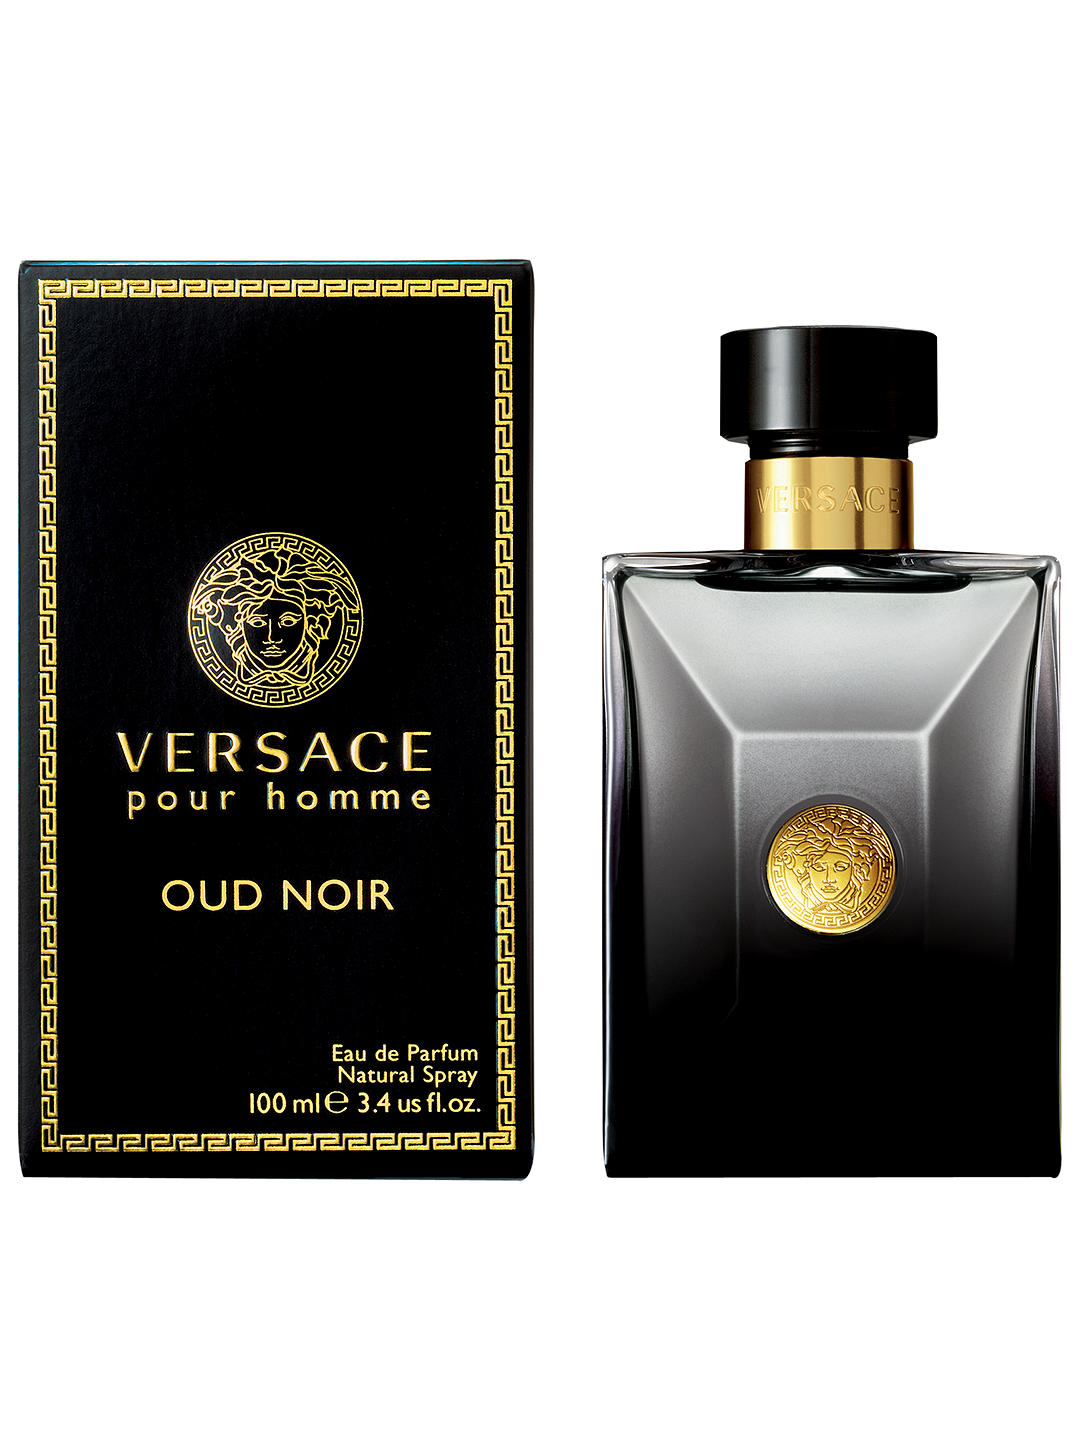 Versace Pour Homme Oud Noir Eau de Parfum, 100ml 1